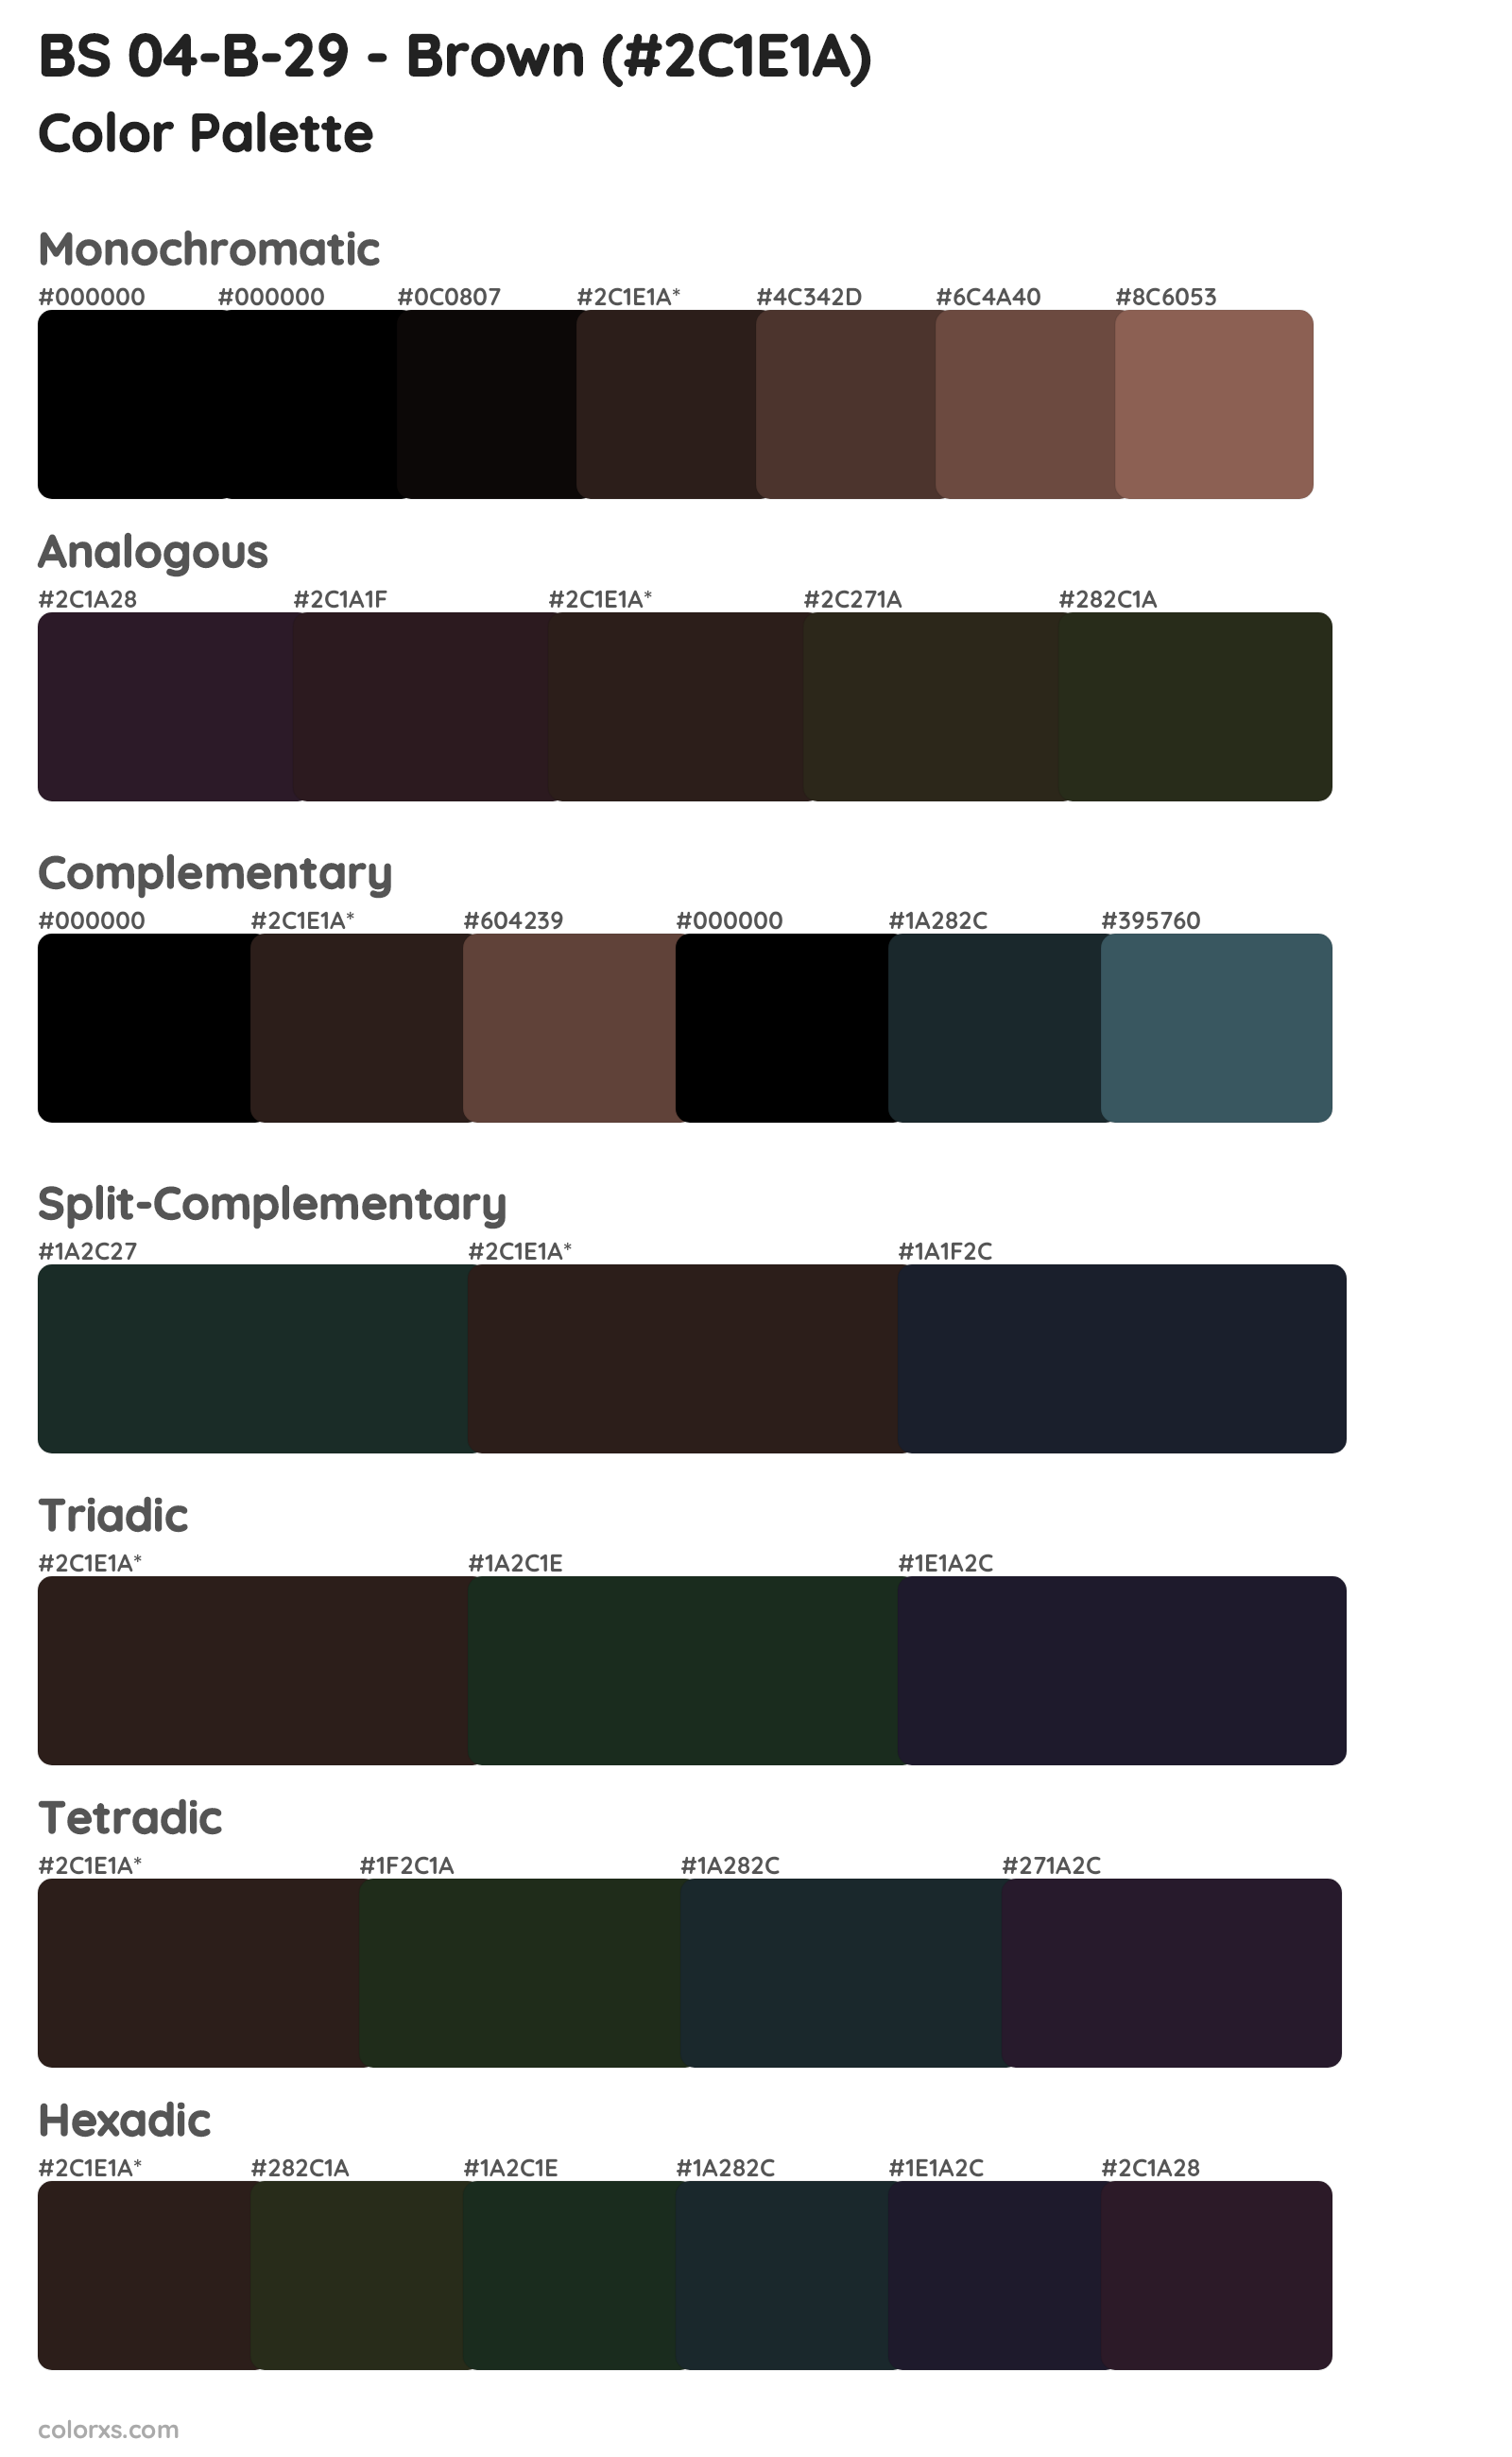 BS 04-B-29 - Brown Color Scheme Palettes